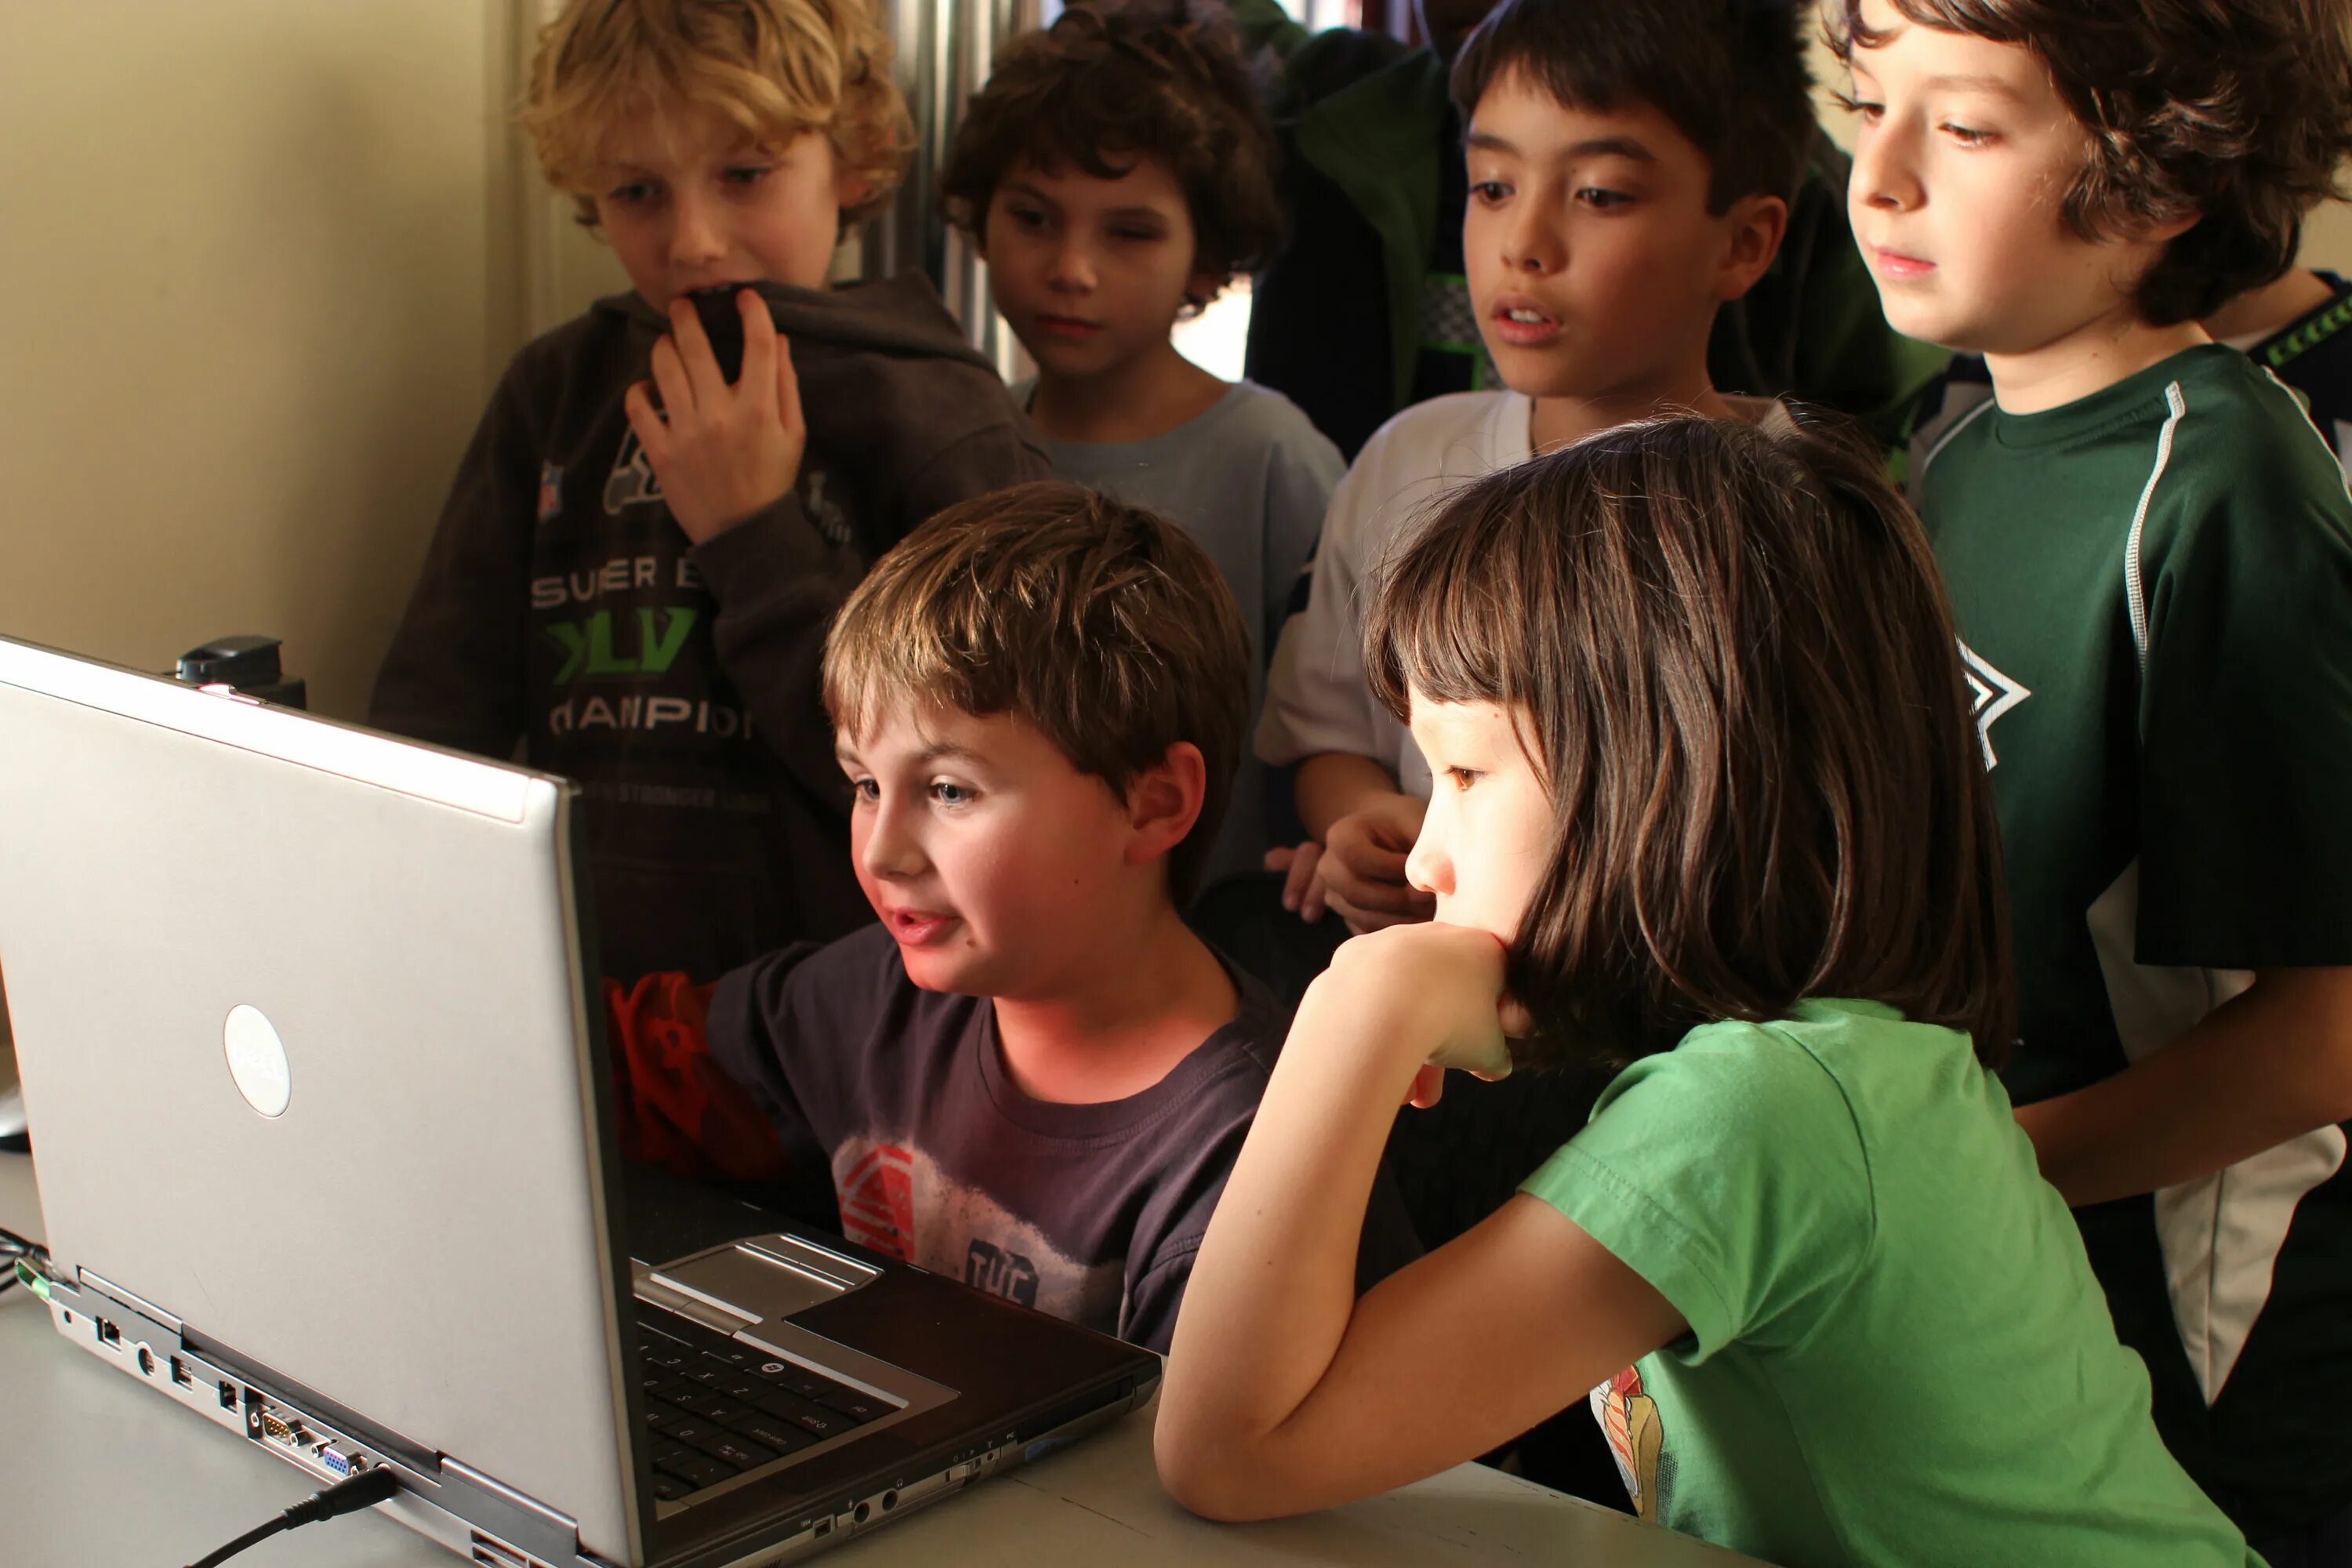 Ребенка код людей. Startups в виде детей. Code Kids. Computer coding for Kids. Kid is coding.